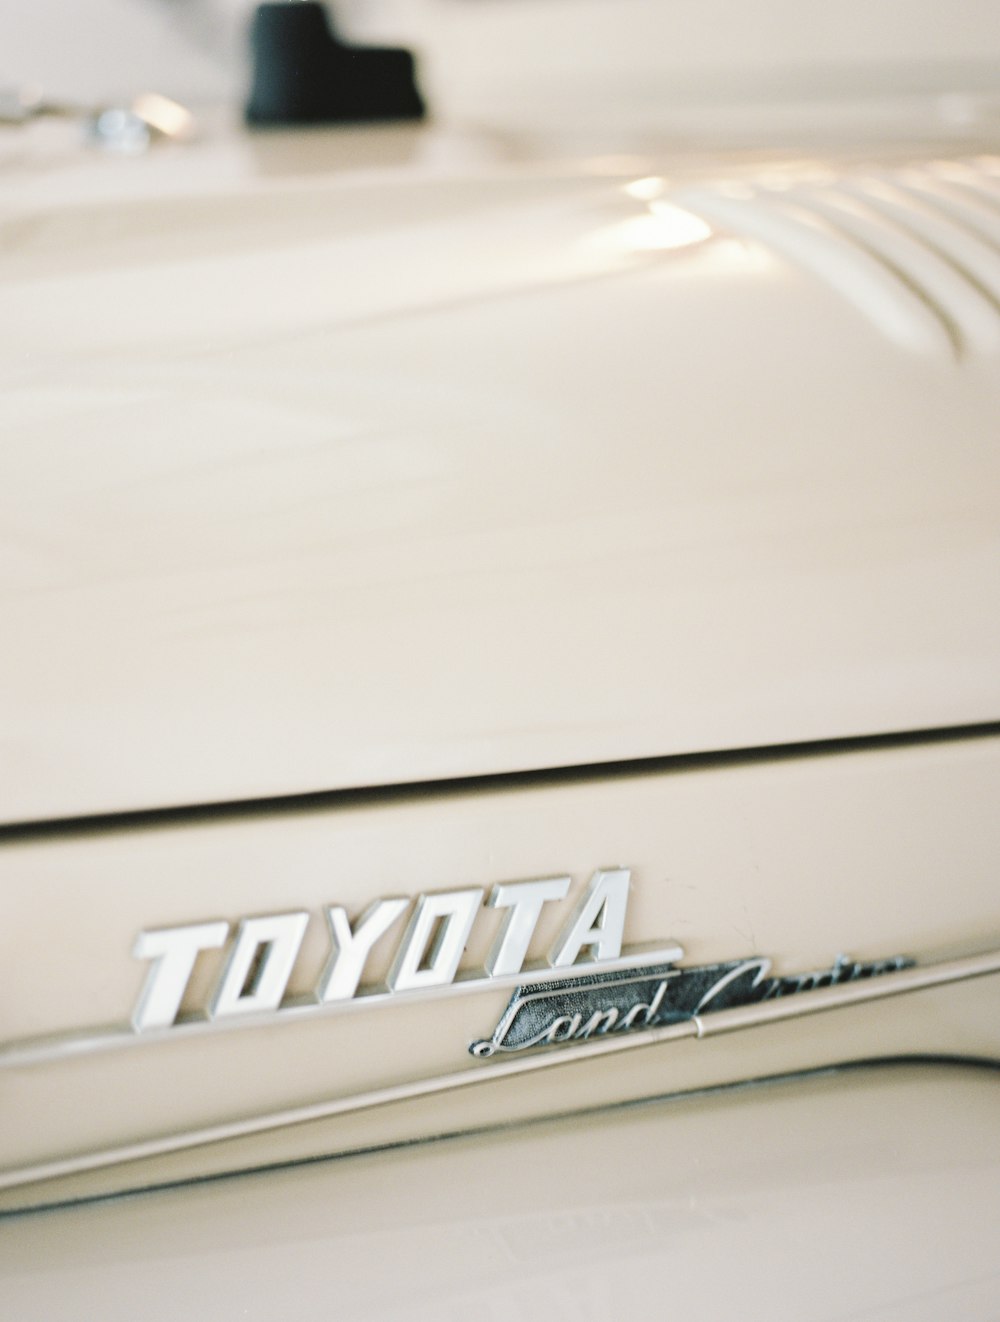 a close up of a toyota emblem on a car